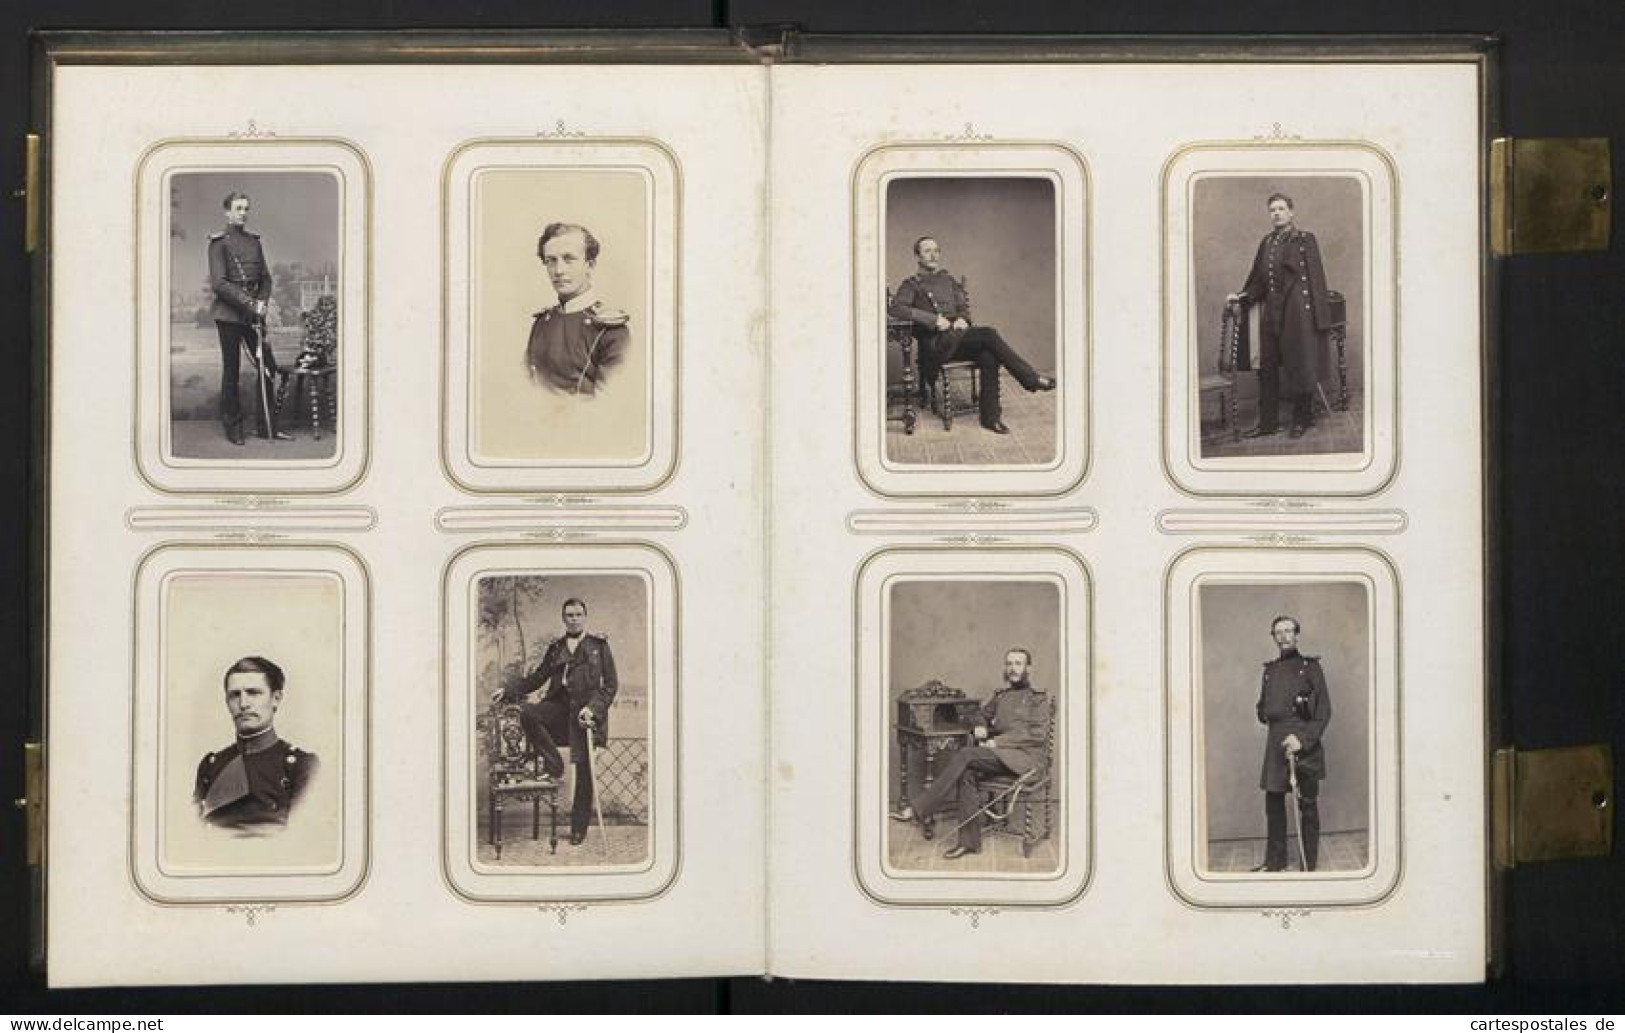 Fotoalbum mit 100 CDV-Fotografien Schwedt a. d. Oder, Militär-Reitschule 1863 /64, Offiziere, Kürassier, Kaserne, Un 